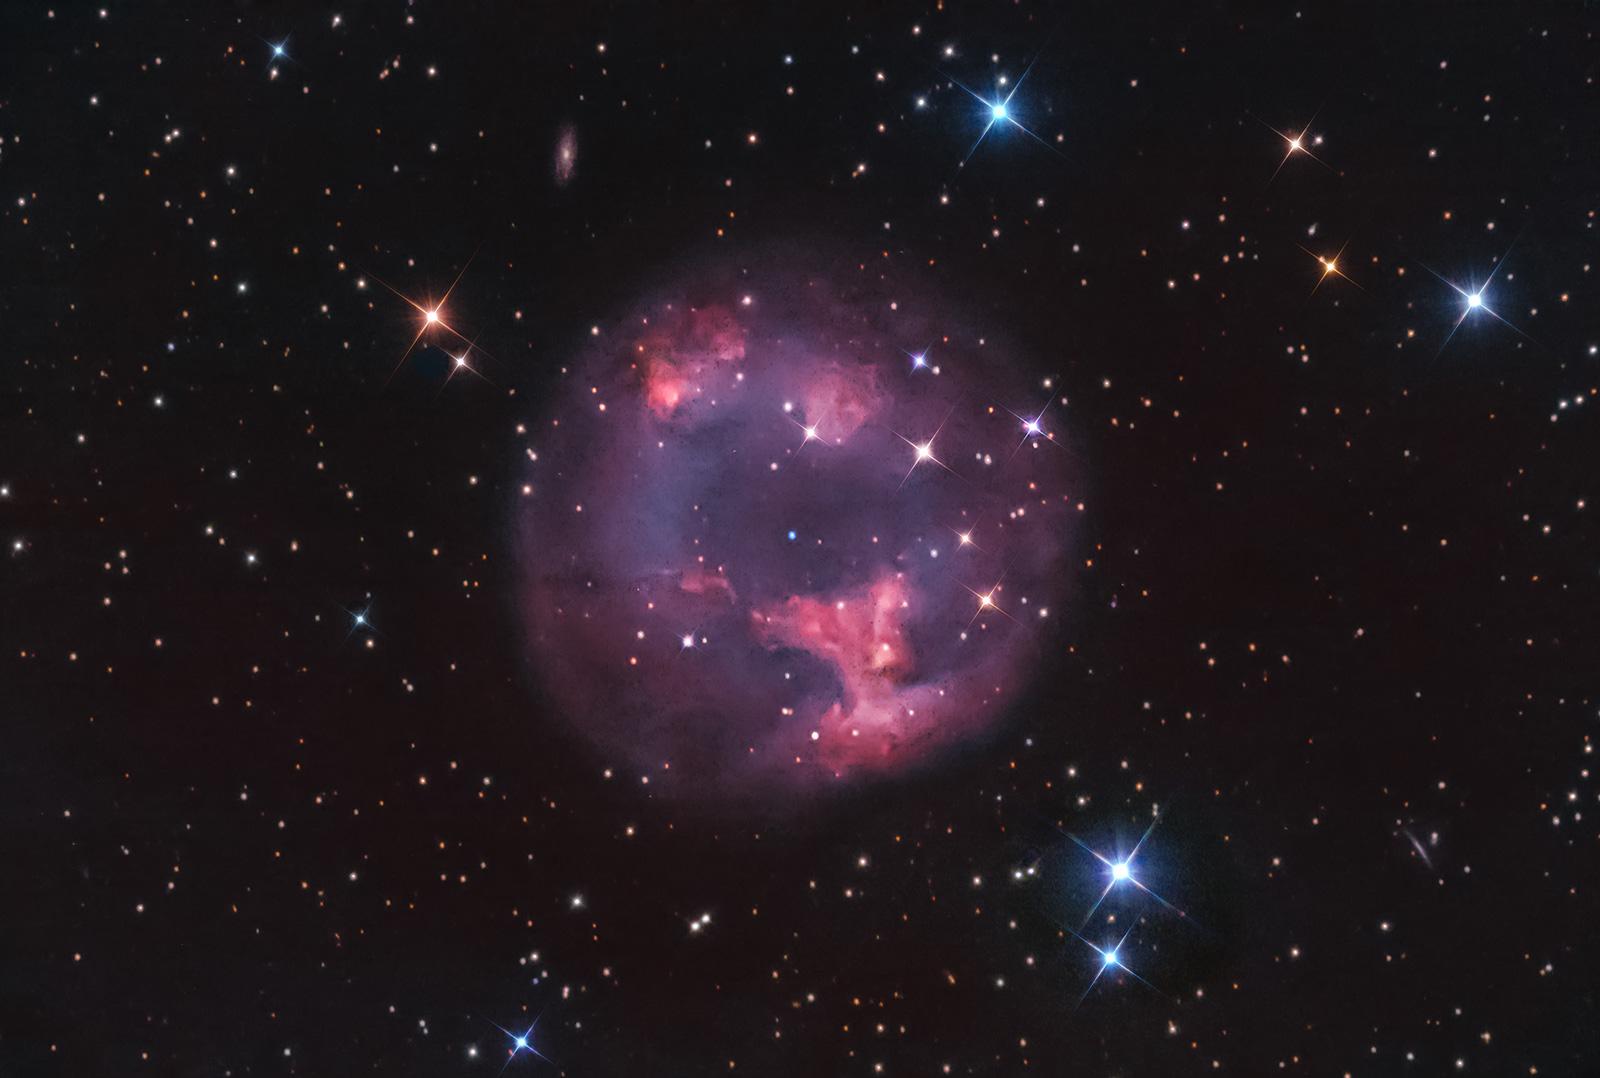 سديم كوكبي بطبقاته المنسلخة عن نجمه القزم الأبيض في المركز بينما تظهر نجوم مدبّبة وأخرى عادية على امتداد الصورة